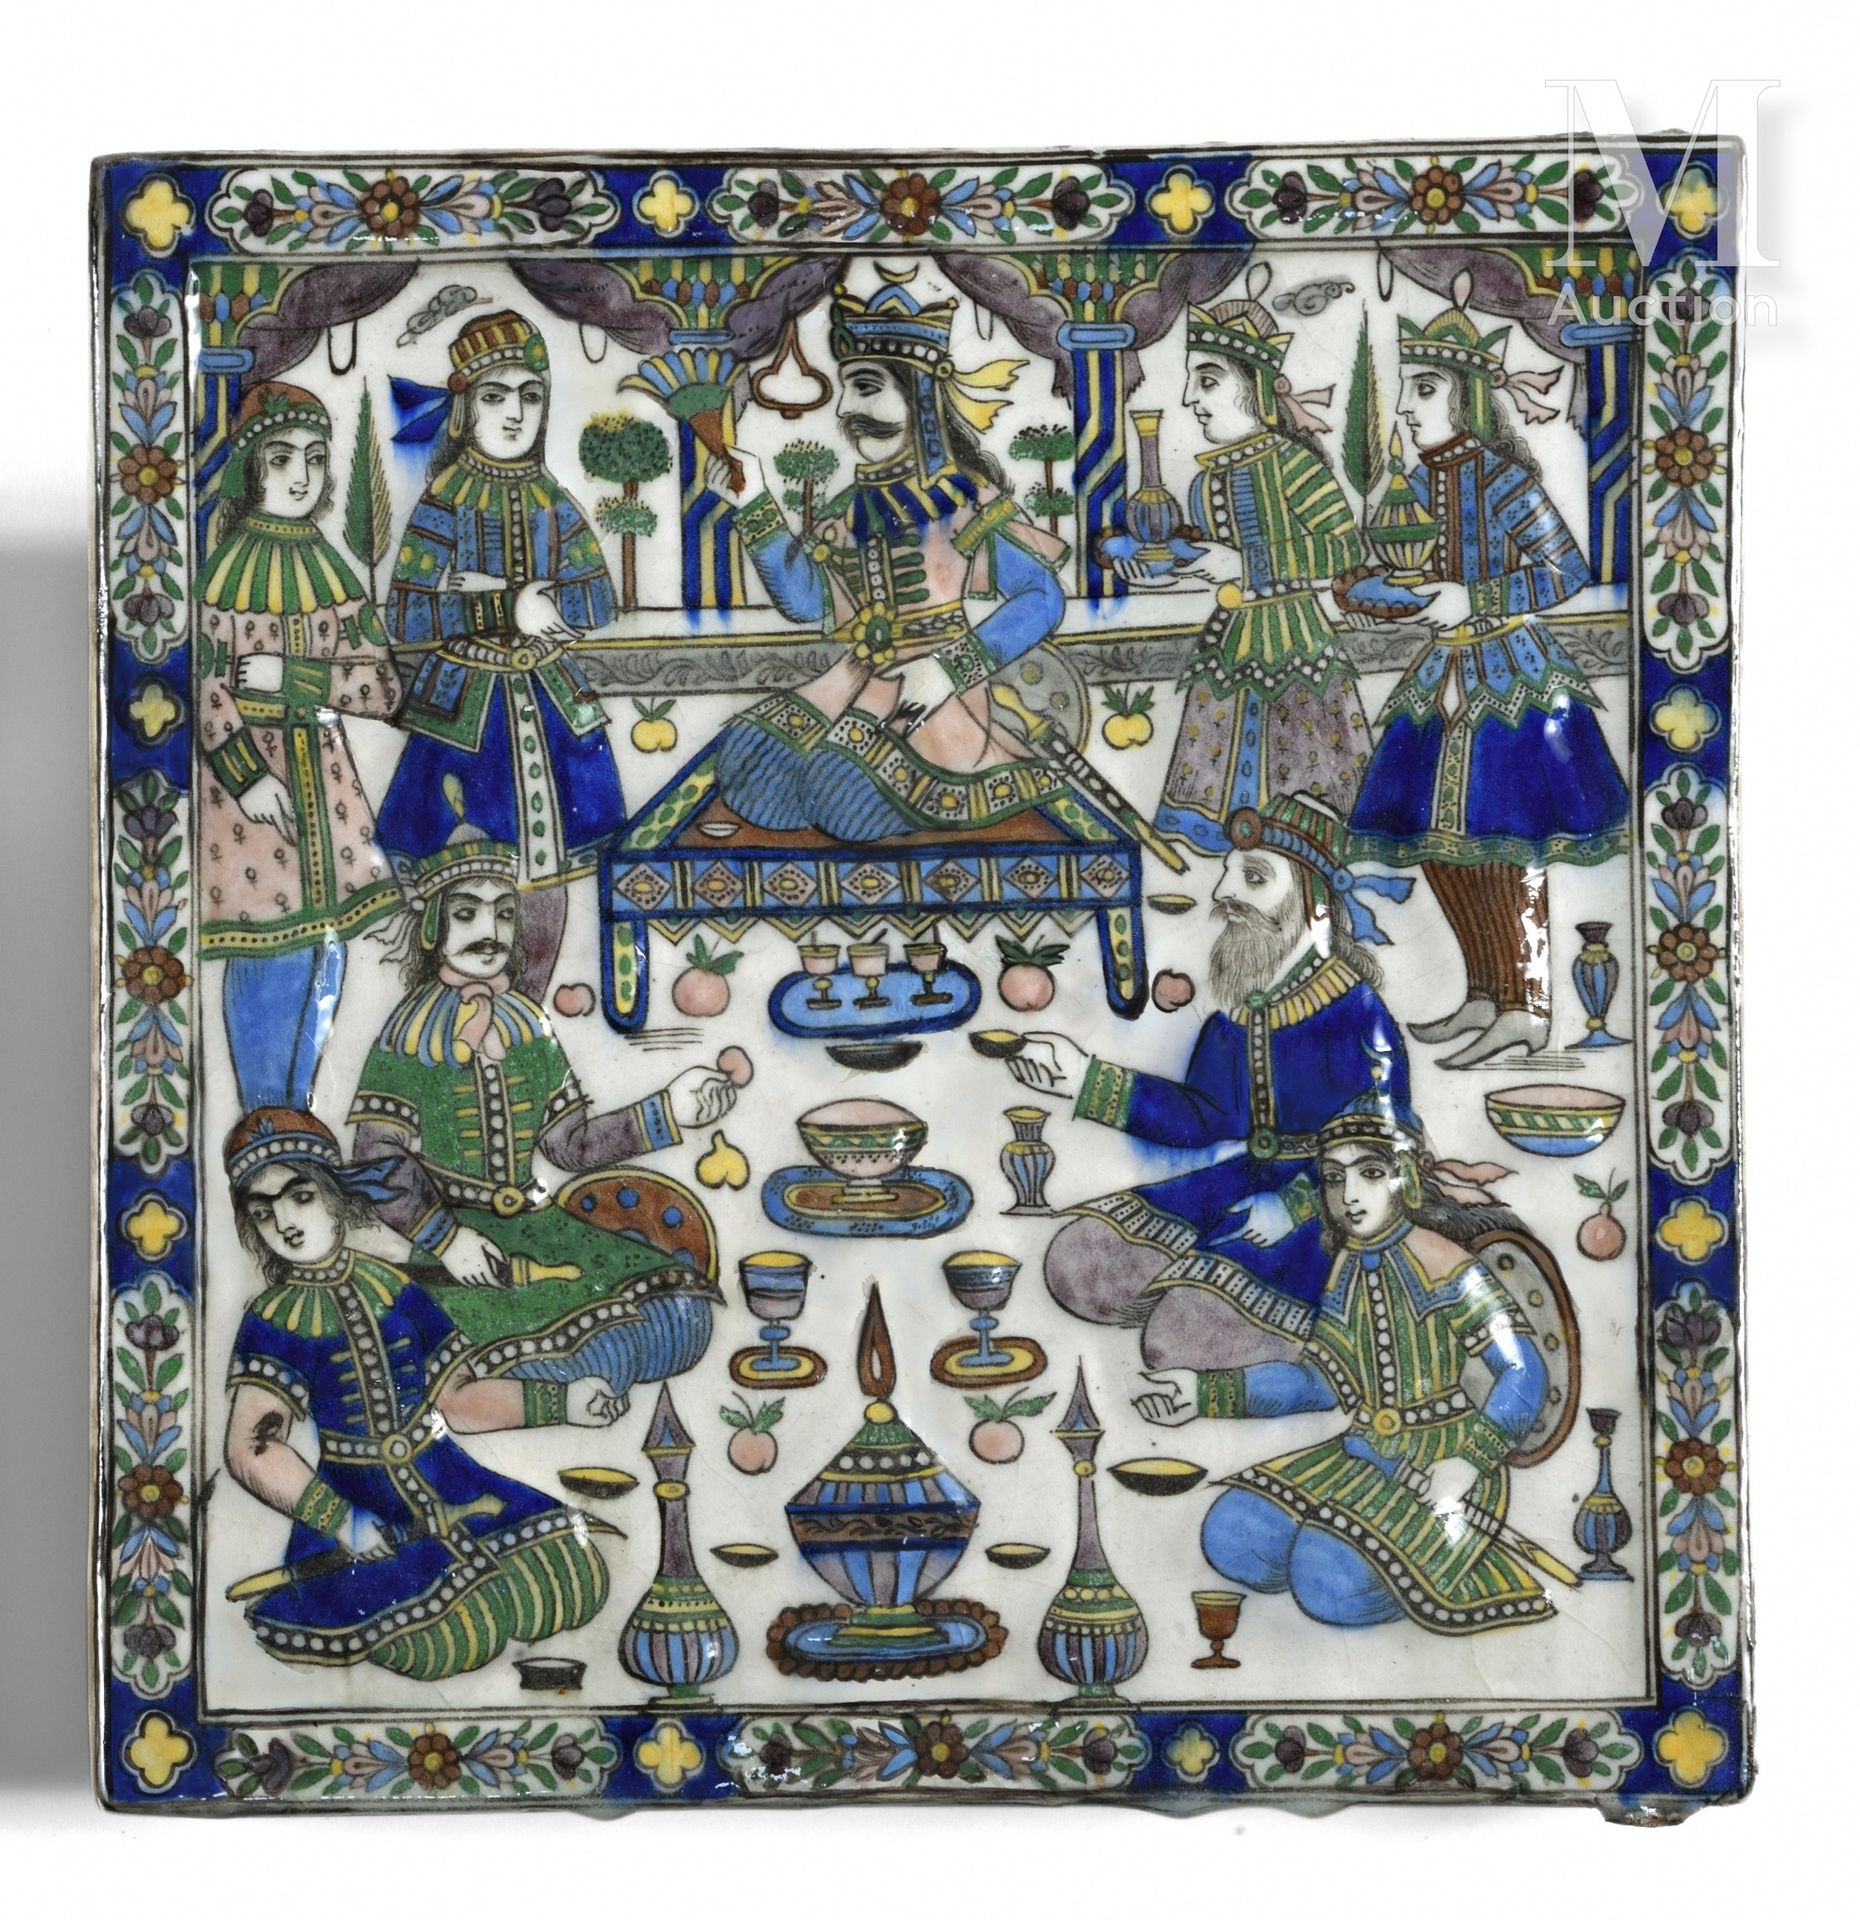 Beau carreau de qajar Irán, alrededor de 1860-1880

Azulejo de cerámica moldeada&hellip;